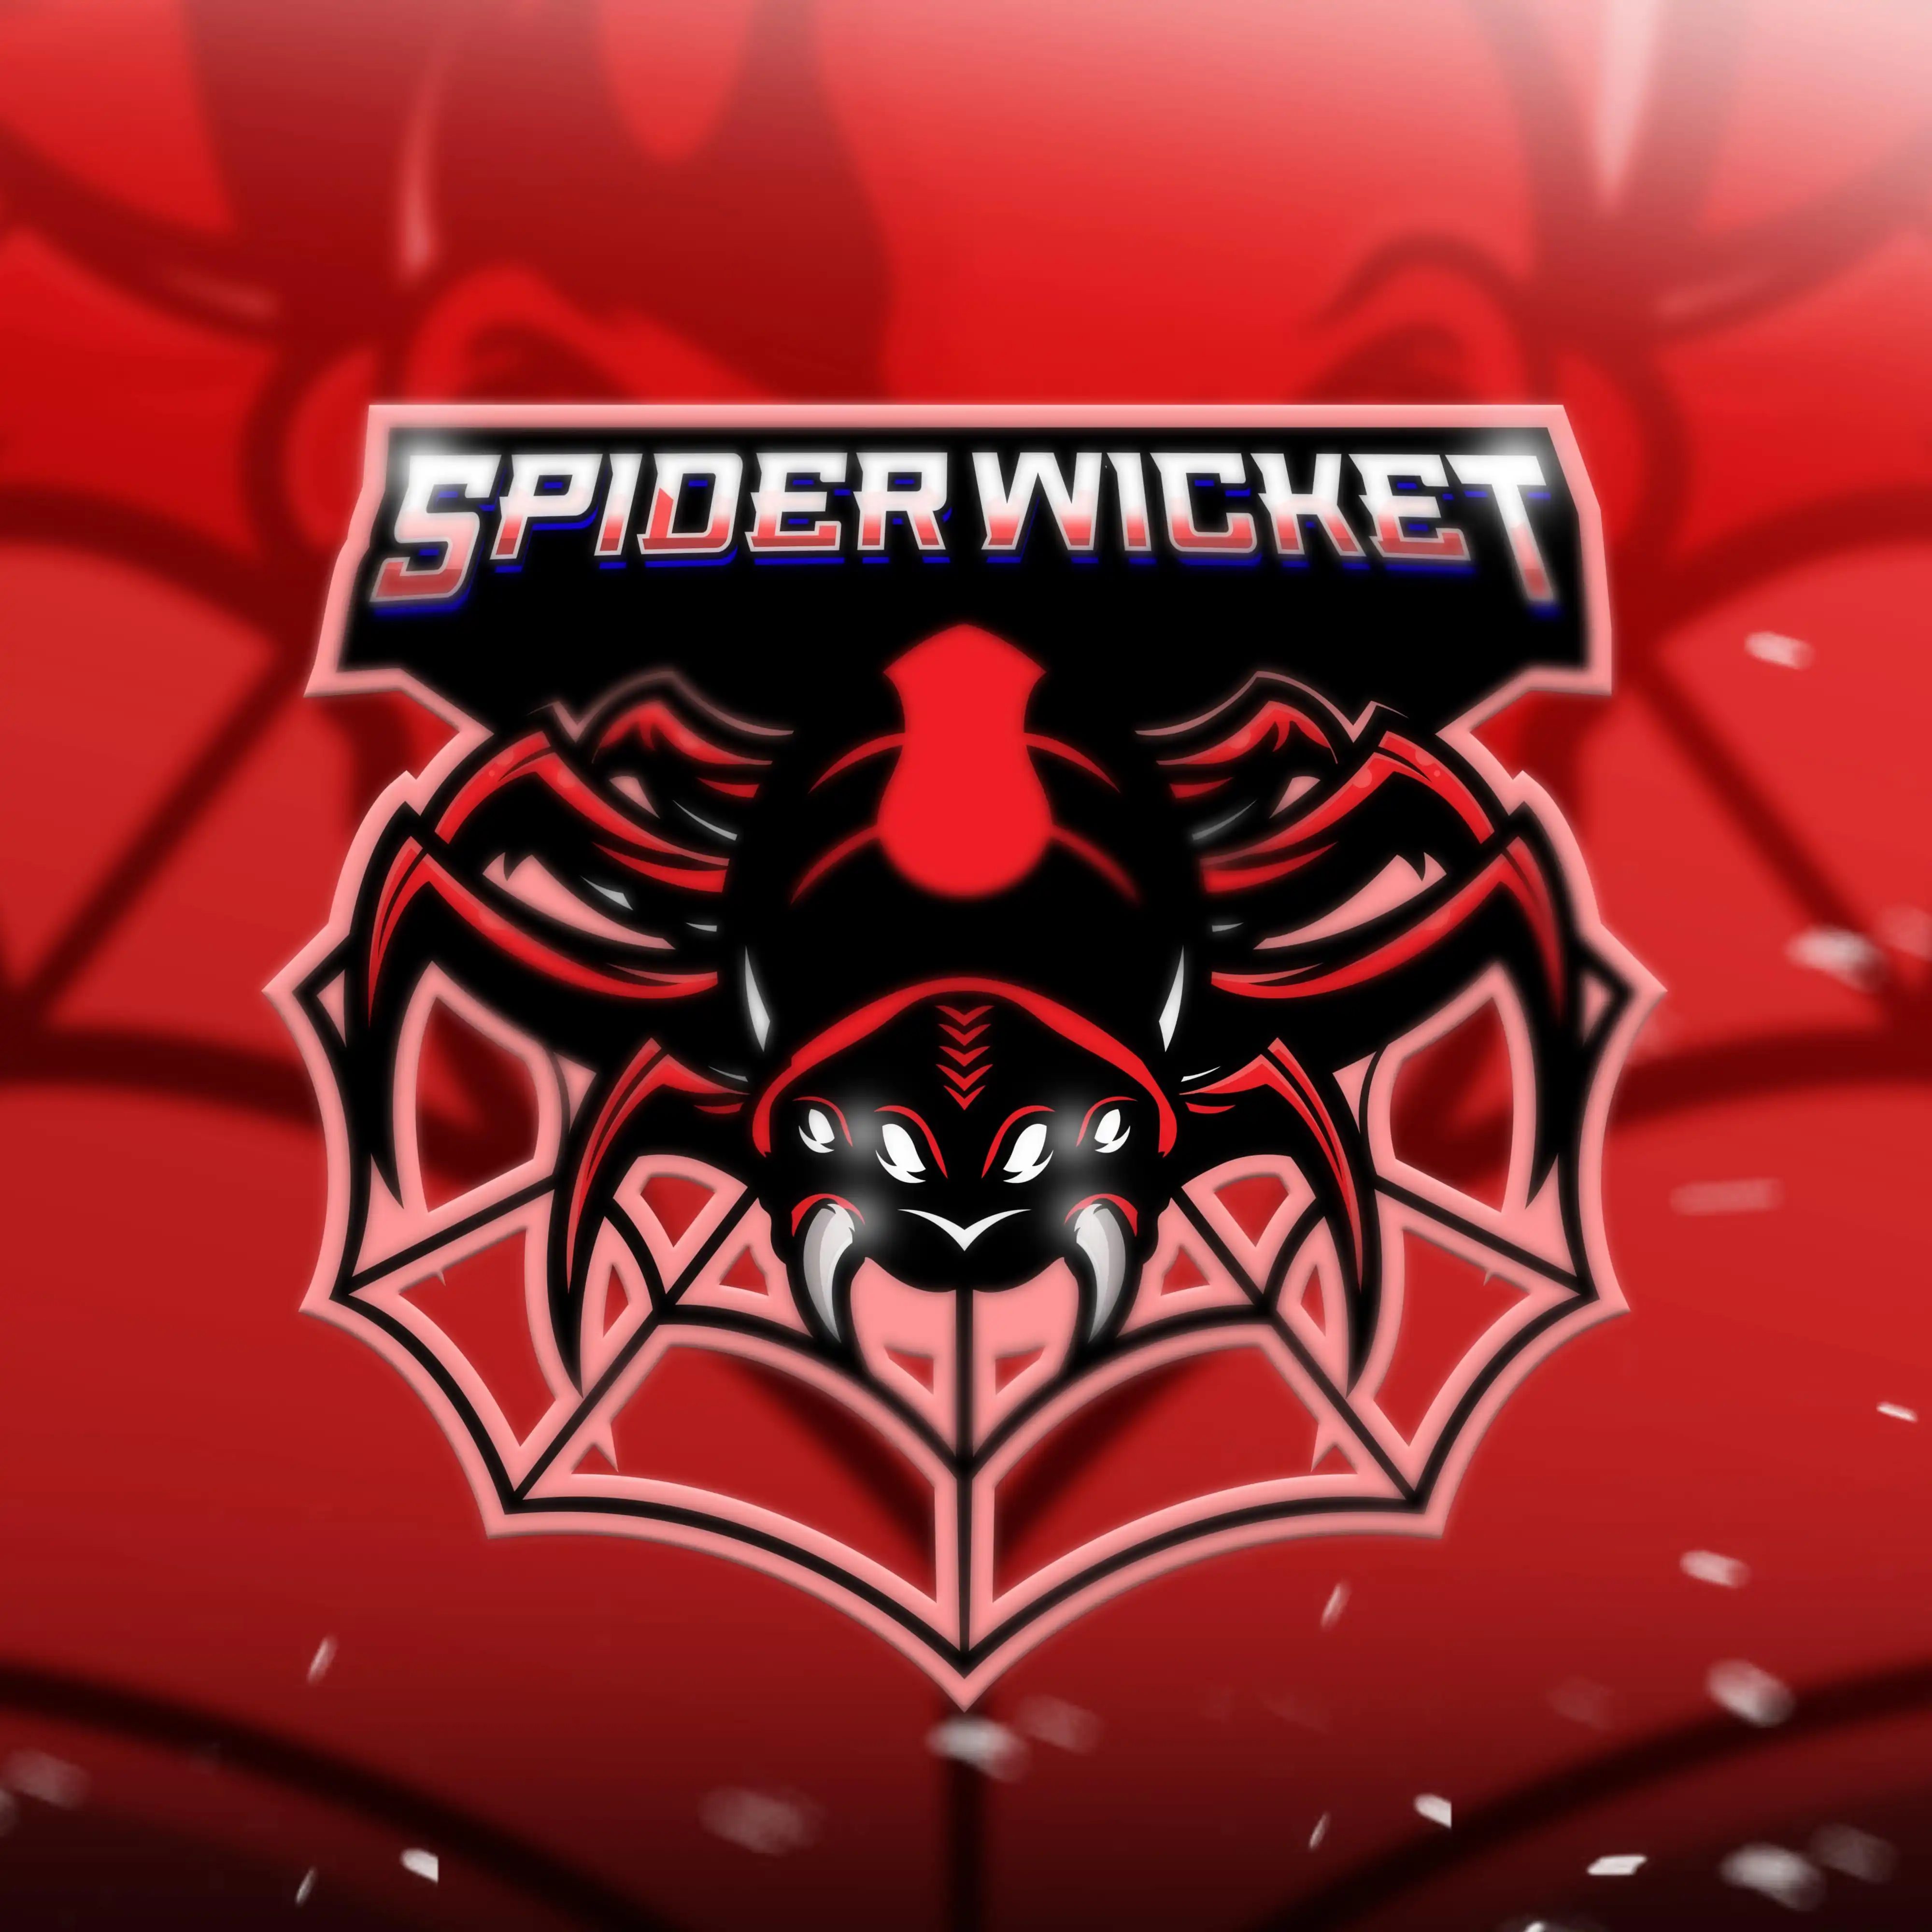 SpiderWicket